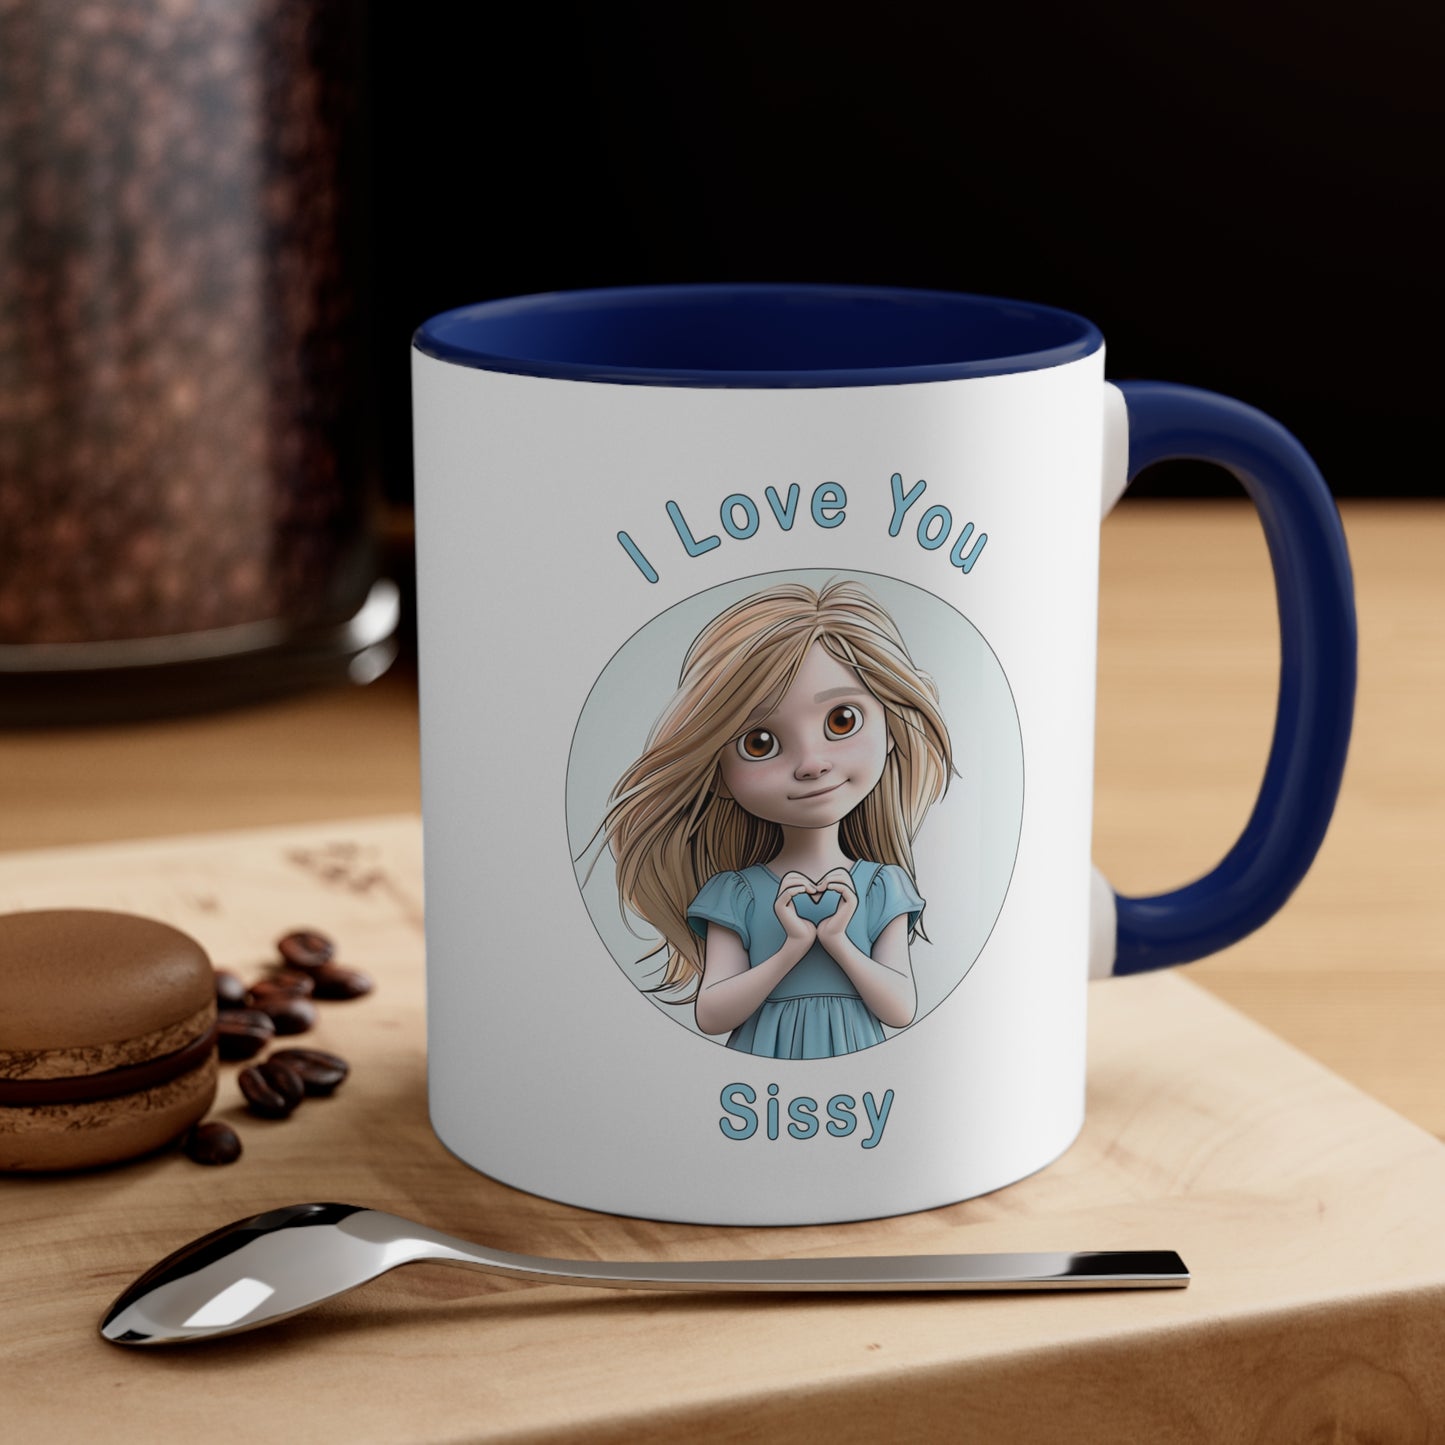 I love You Sissy Coffee Mug, 11oz